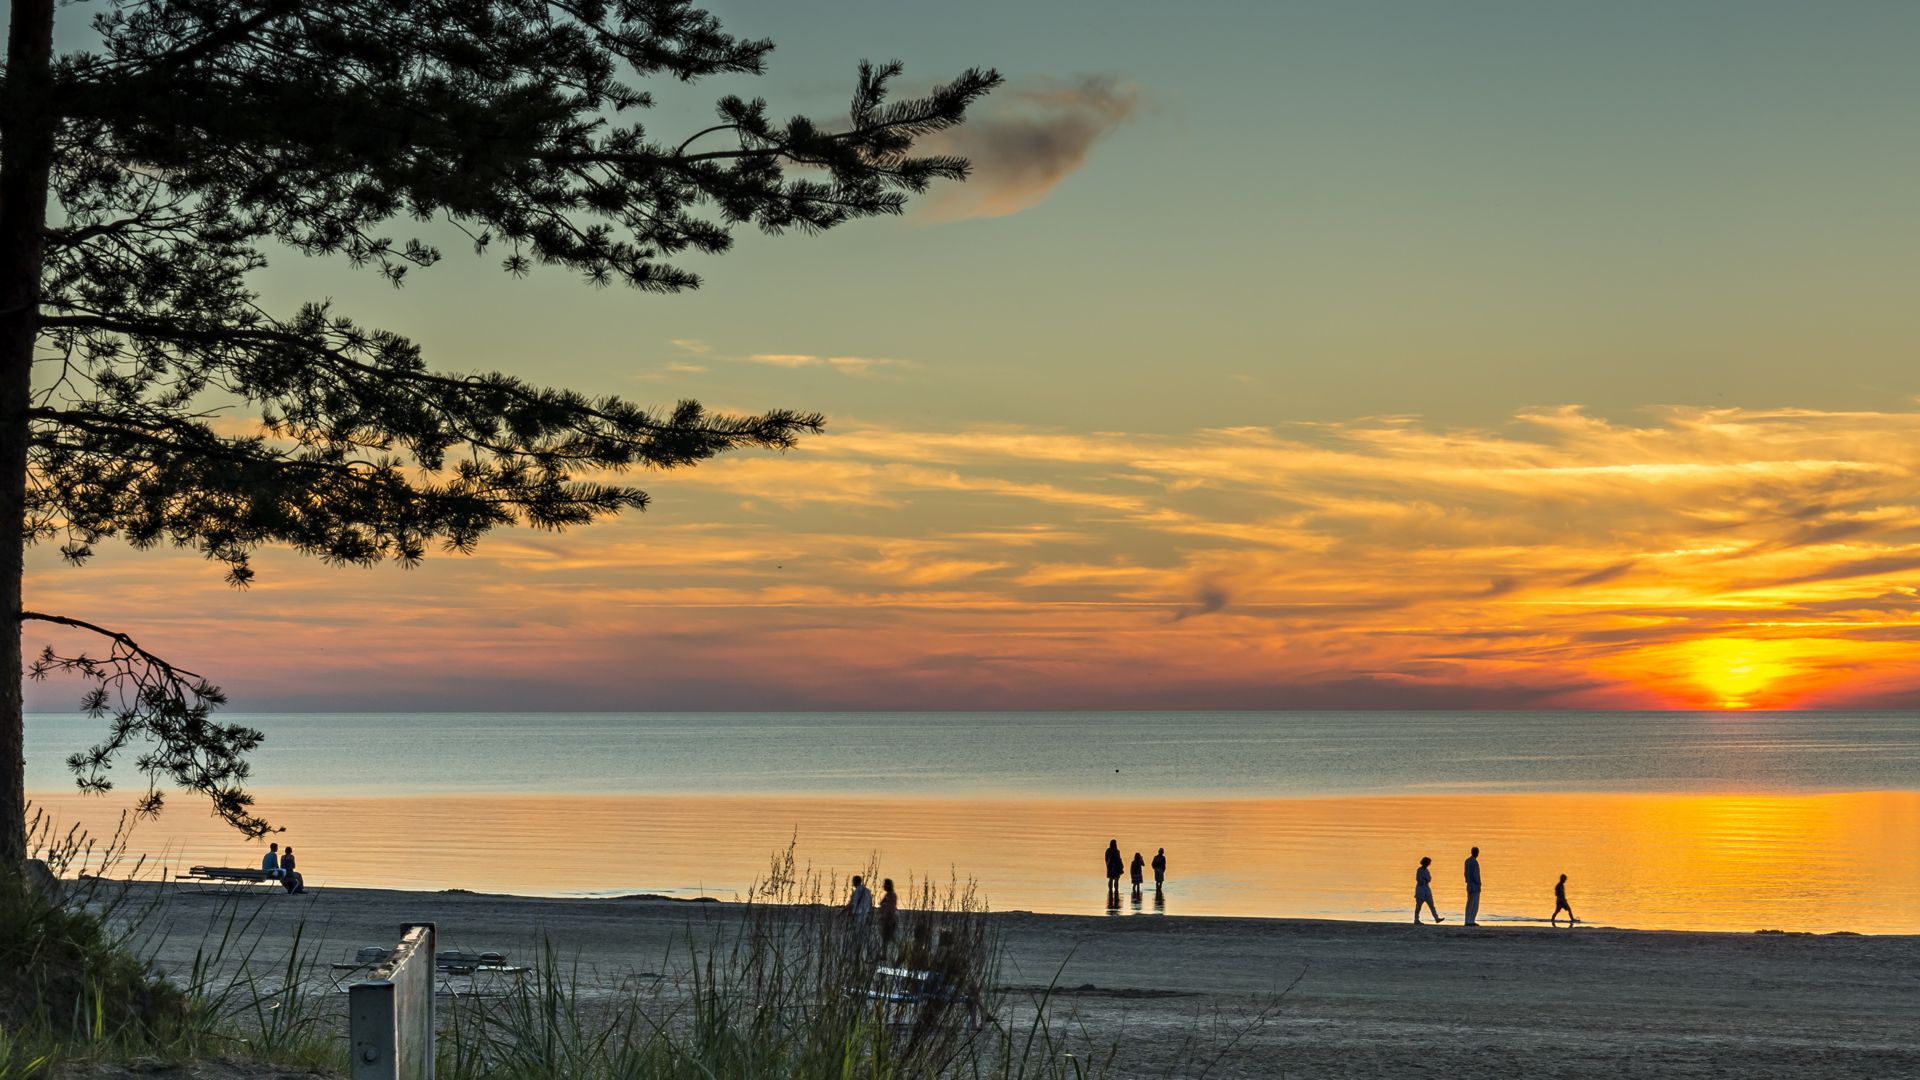 Fargerik solnedgang på sandstrand ved Jurmala – det berømte feriestedet i den baltiske regionen, Latvia